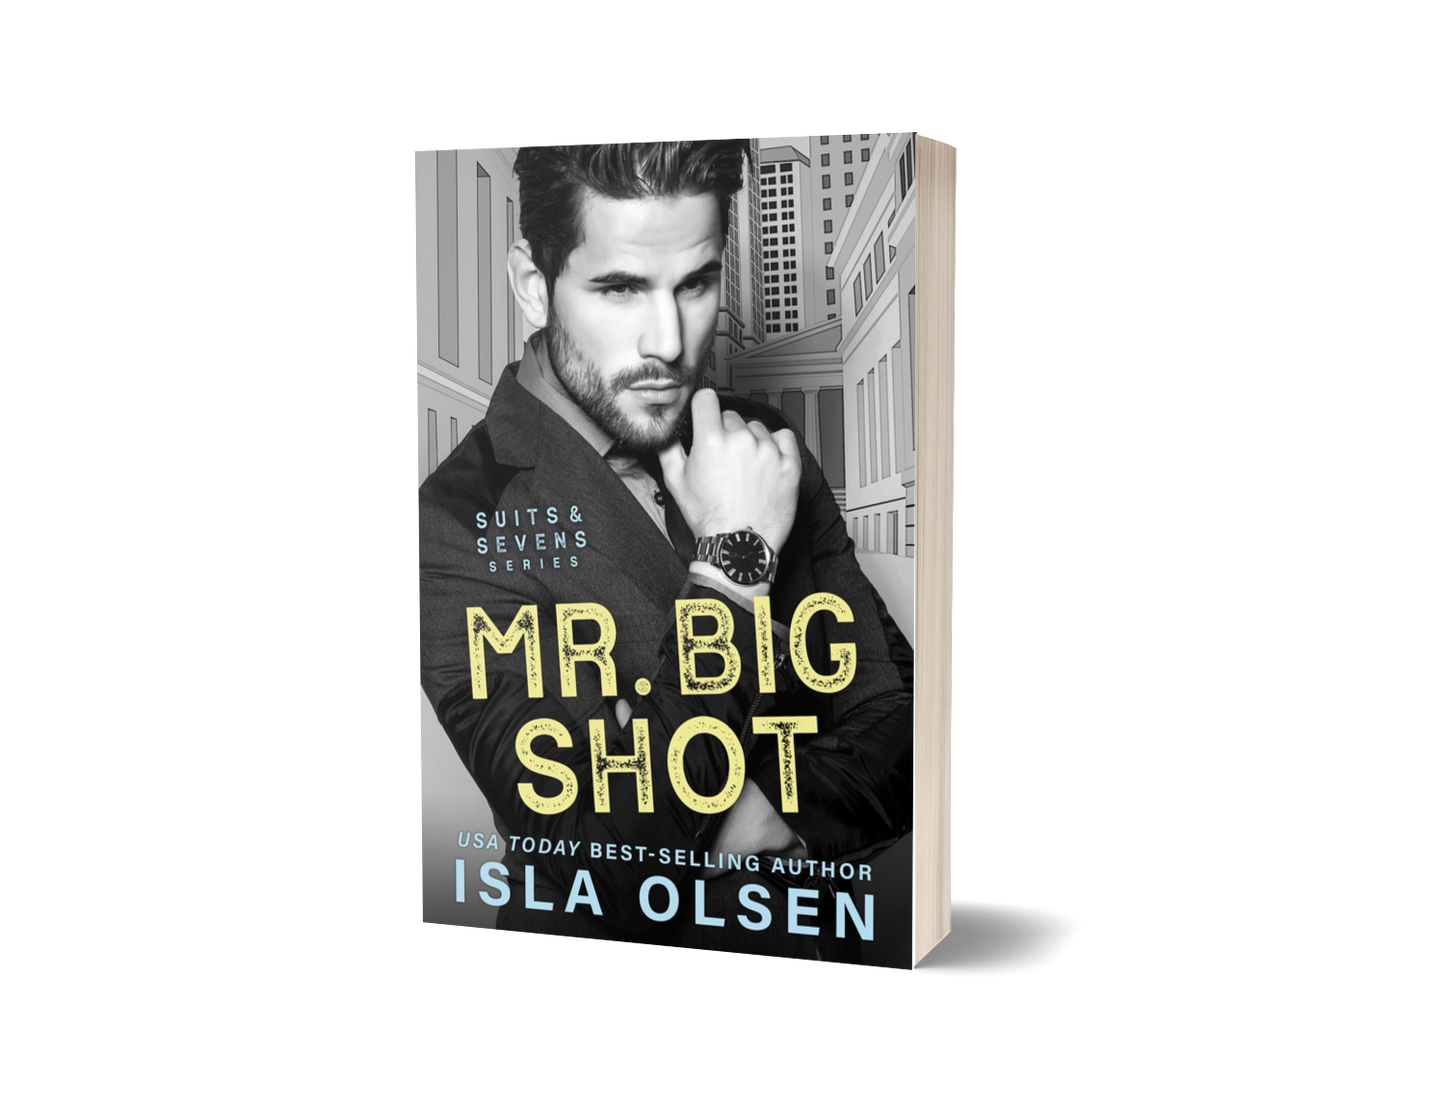 Mr Big Shot: Suits & Sevens Book 1